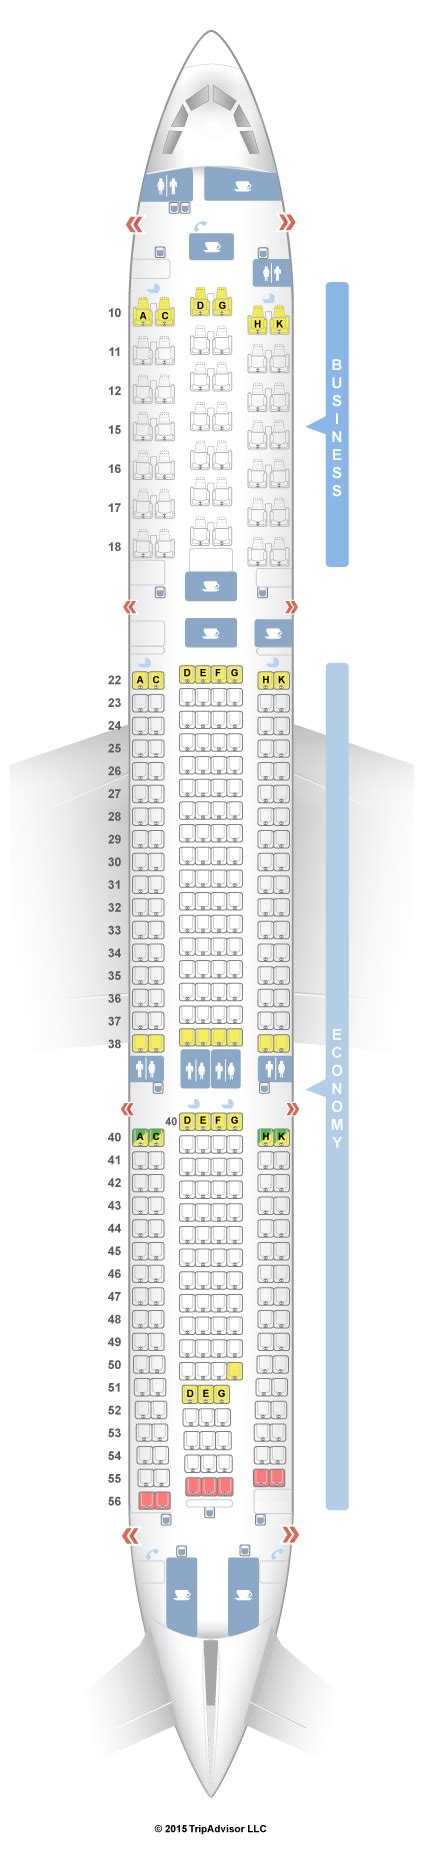 Seatguru Seat Map Dragonair Airbus A330 300 333 V2